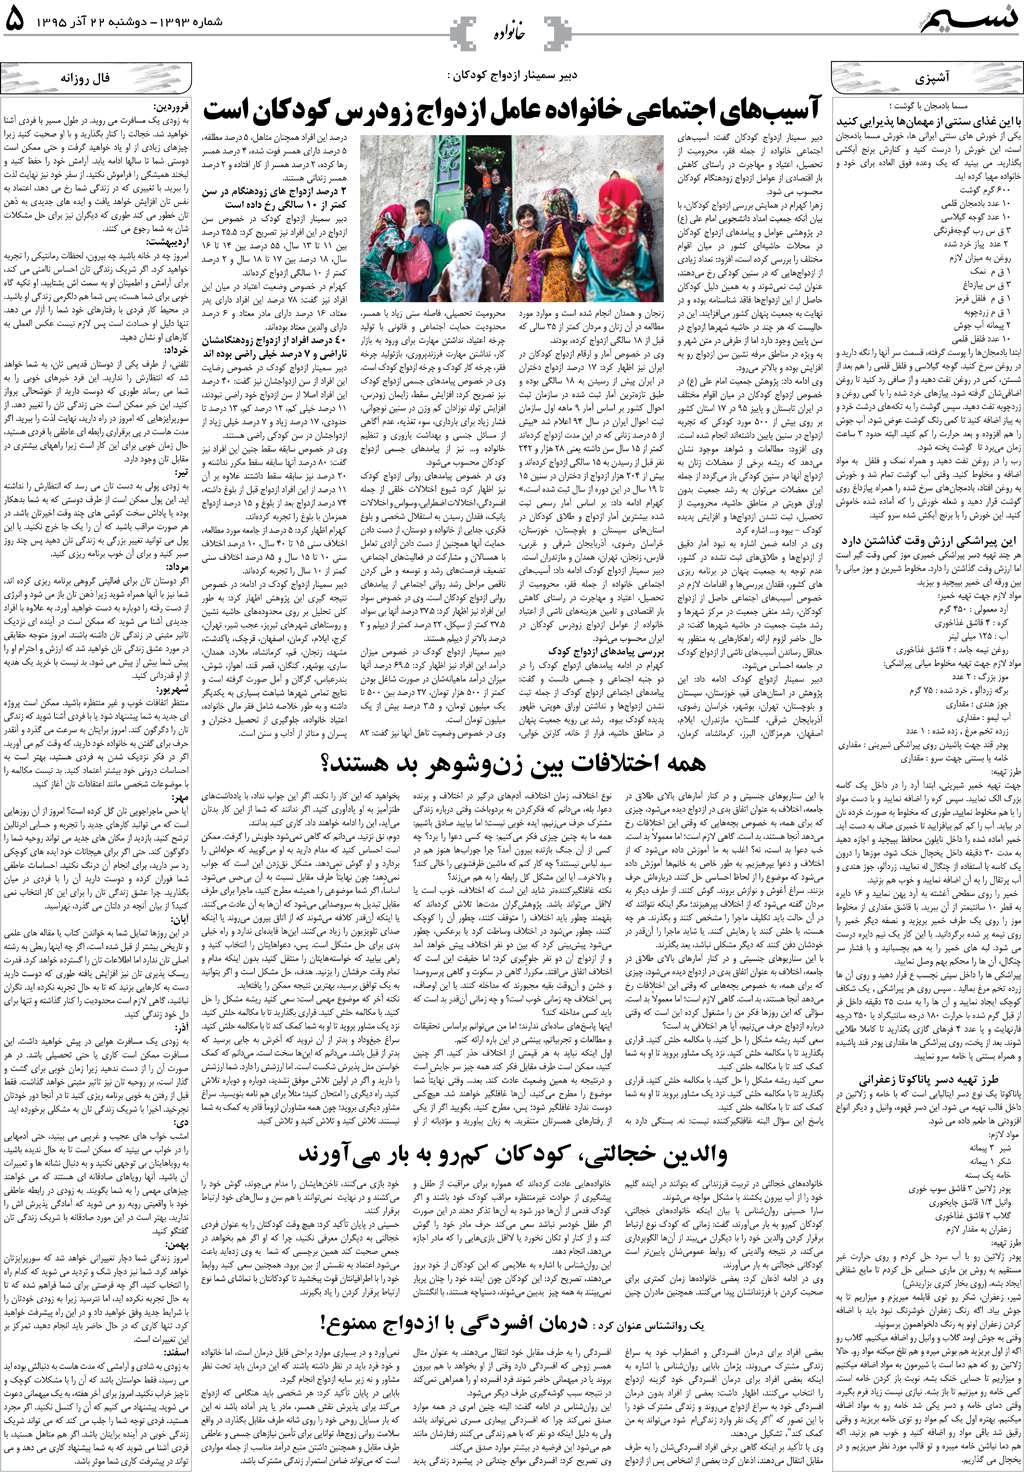 صفحه خانواده روزنامه نسیم شماره 1393